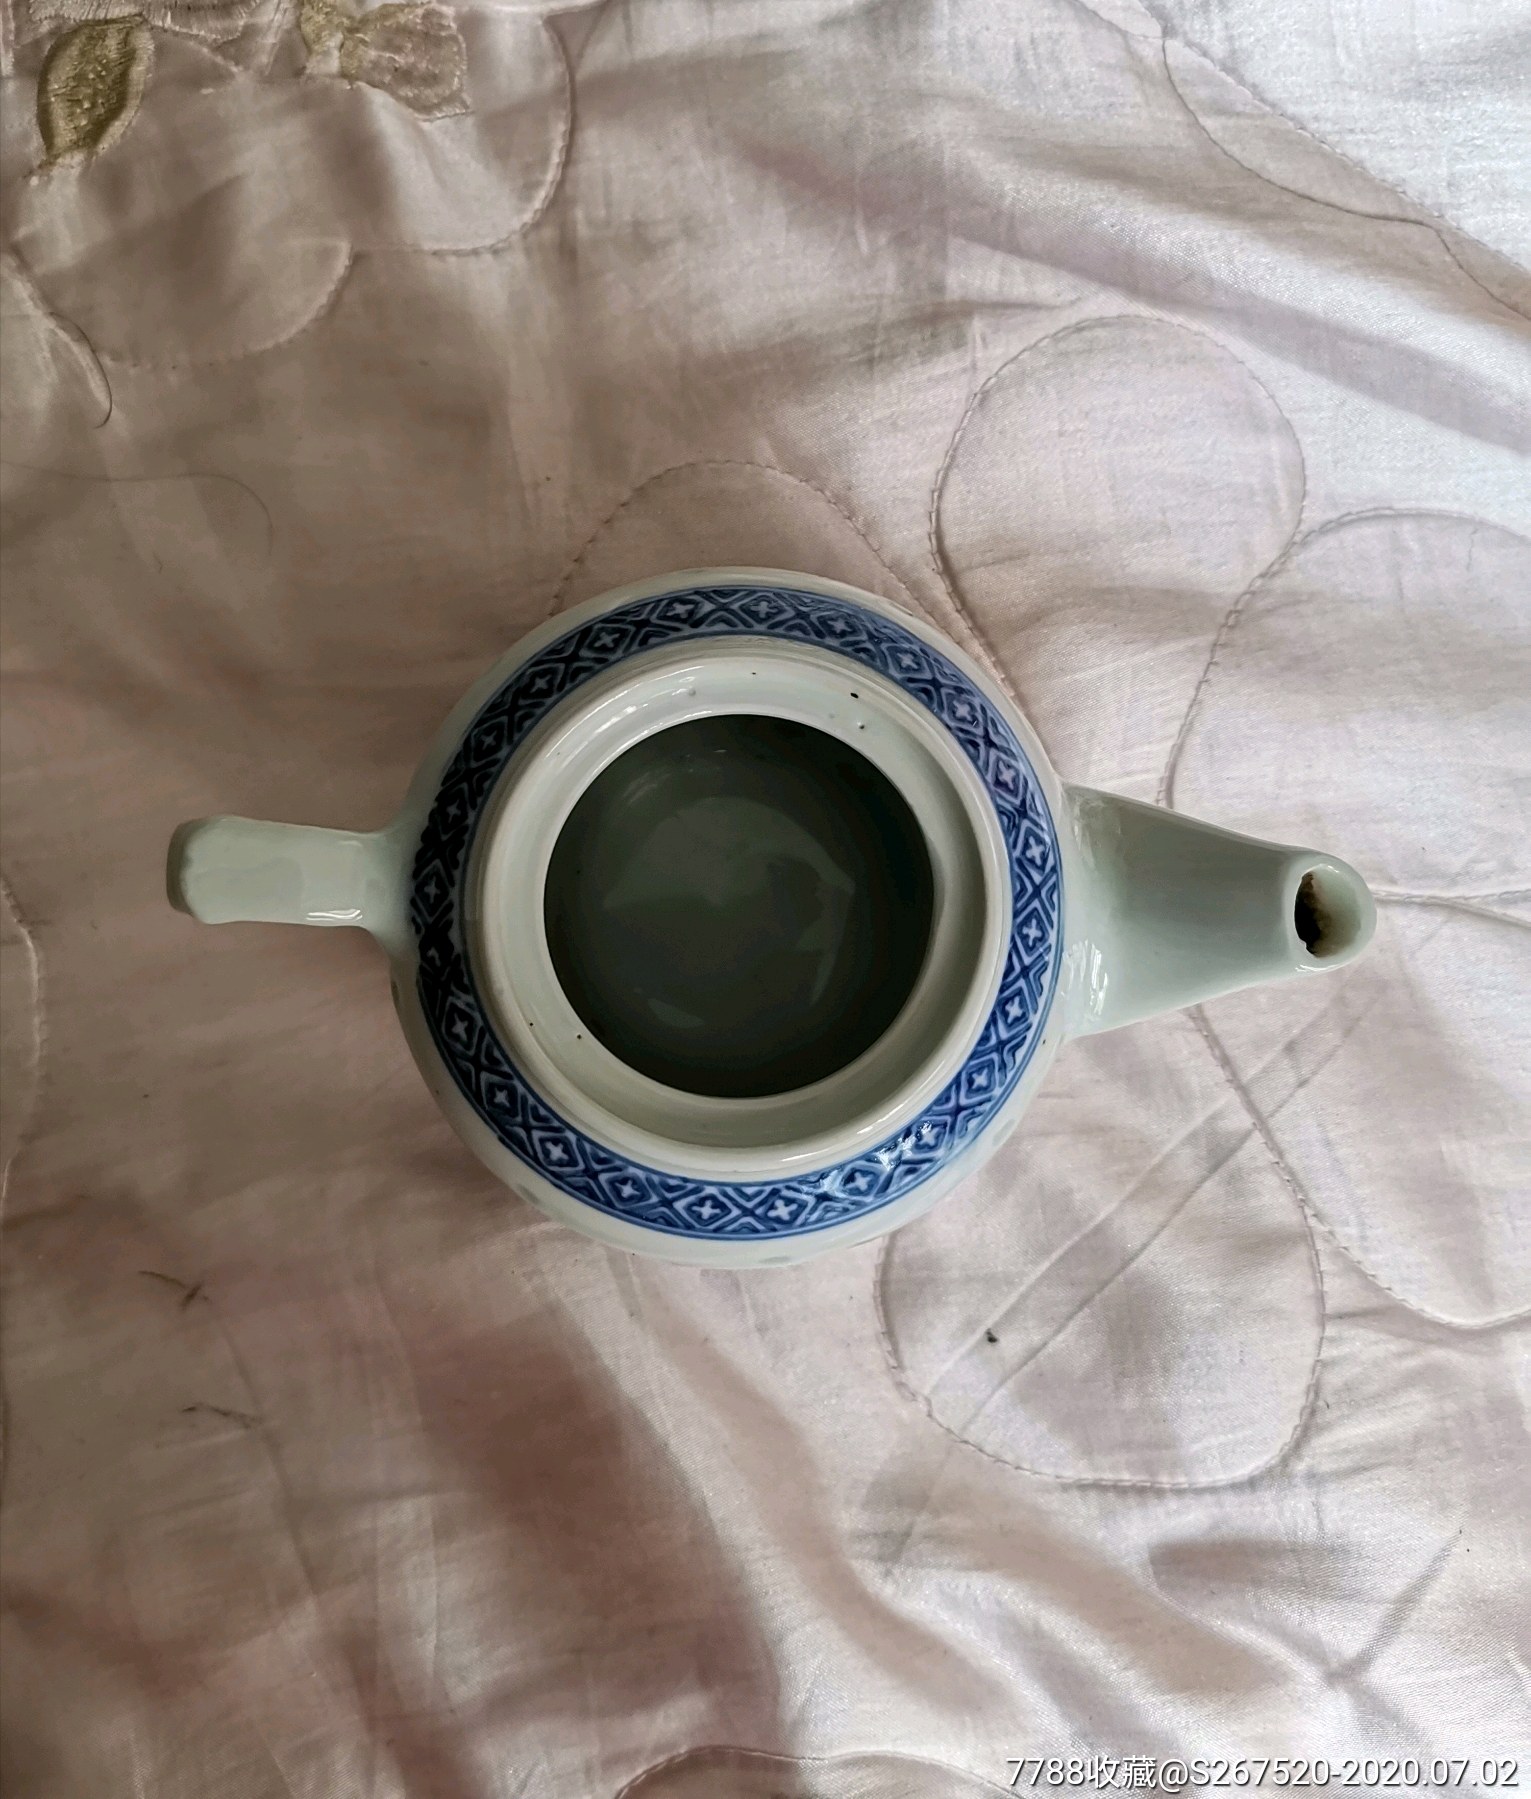 景德镇制作玲珑瓷茶壶